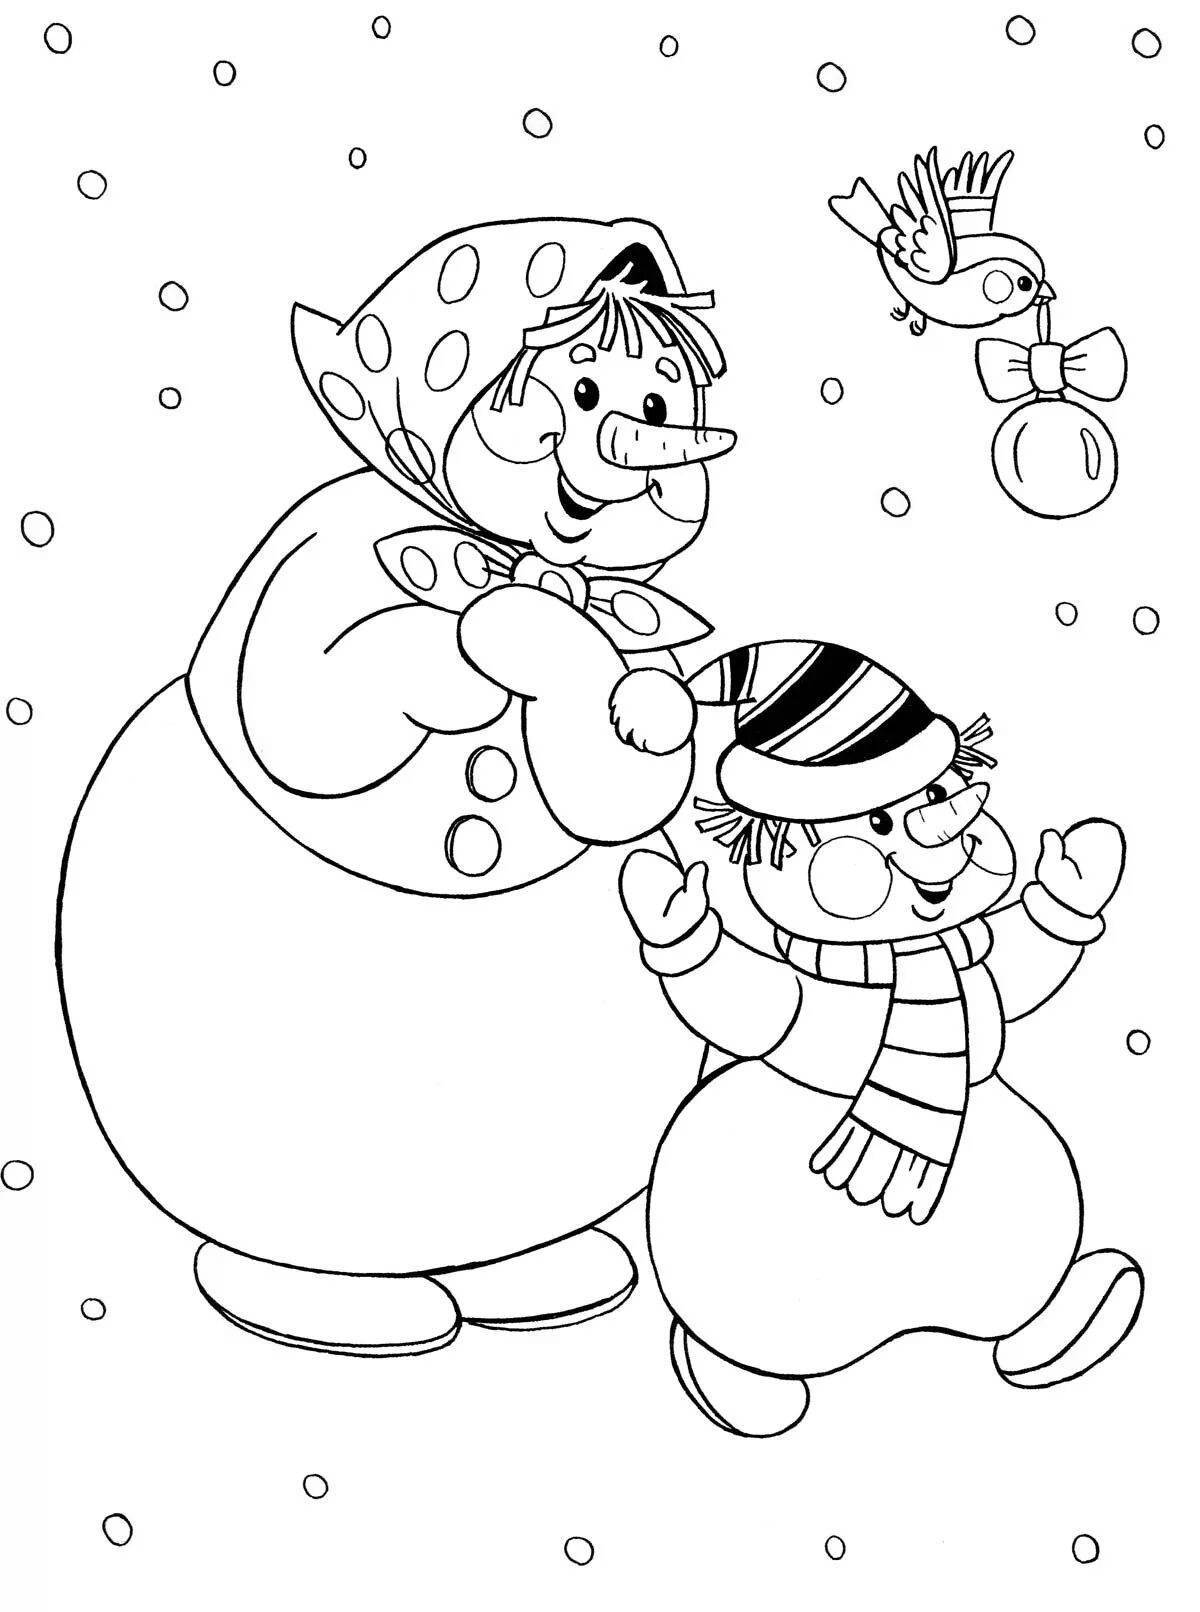 Юмористическая семейная раскраска снеговиков